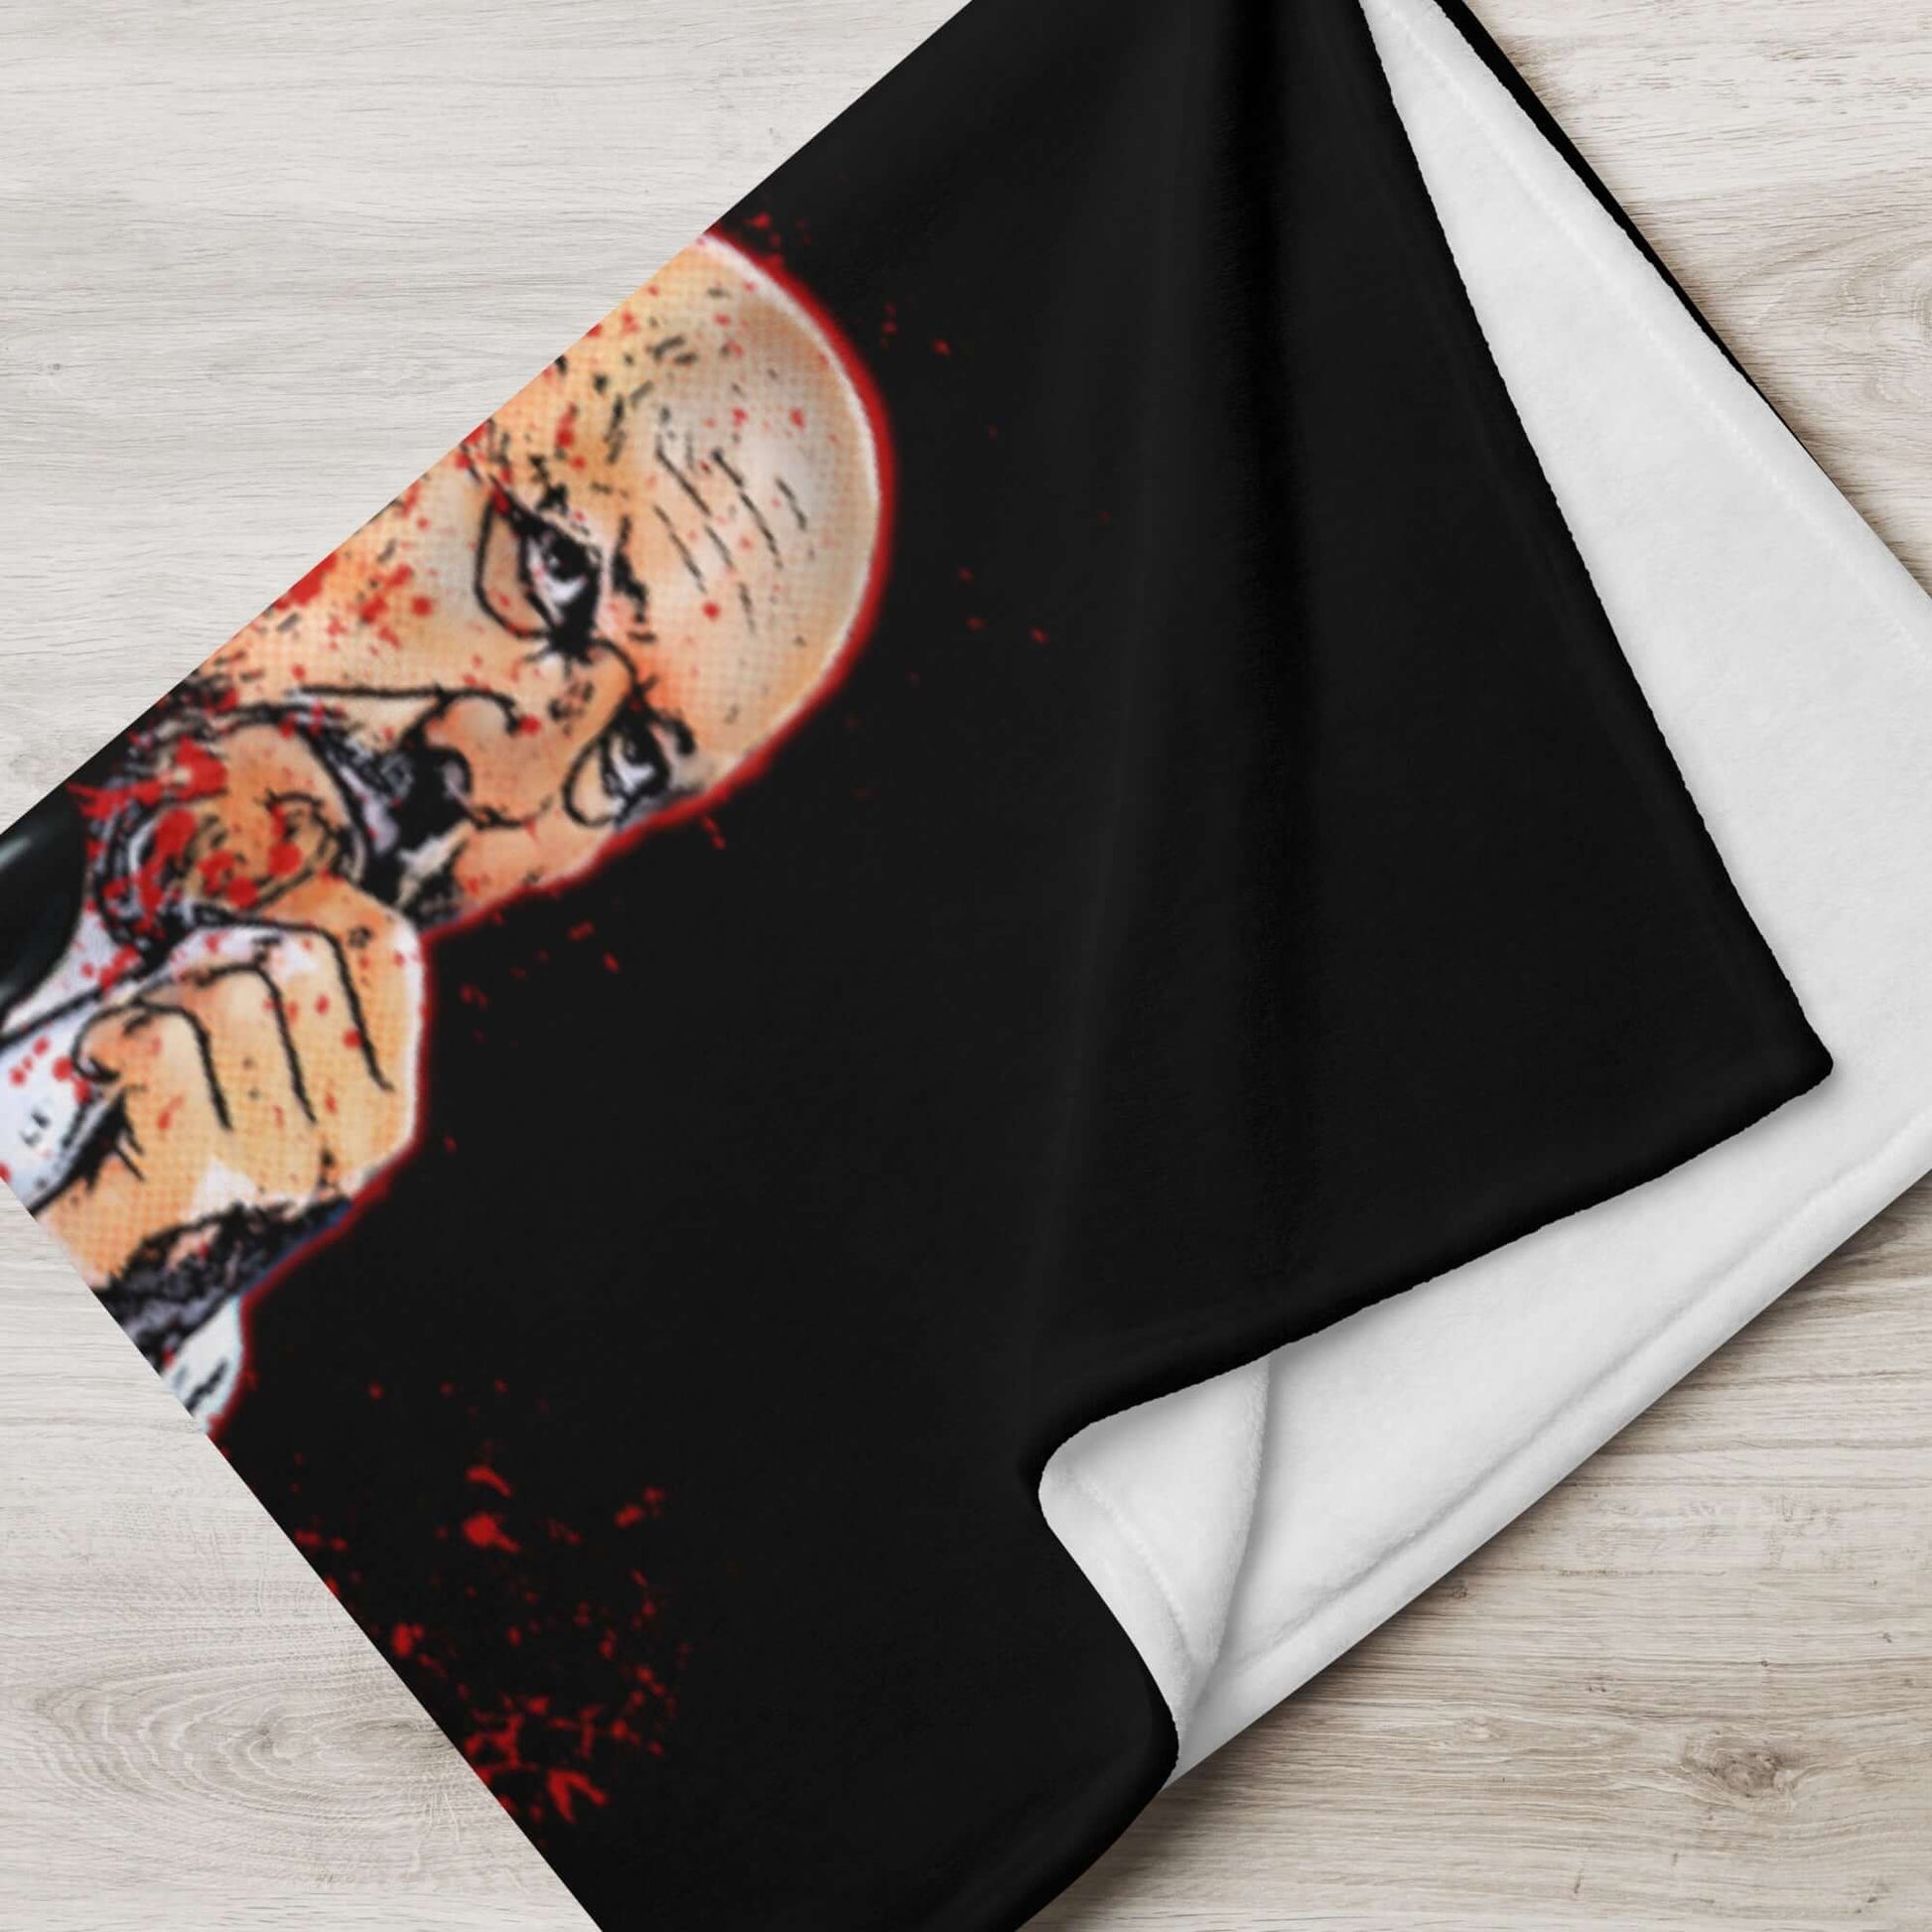 Michael Myers Halloween Throw Blanket - Iconic Slasher Film Merchandise - thenightmareinc